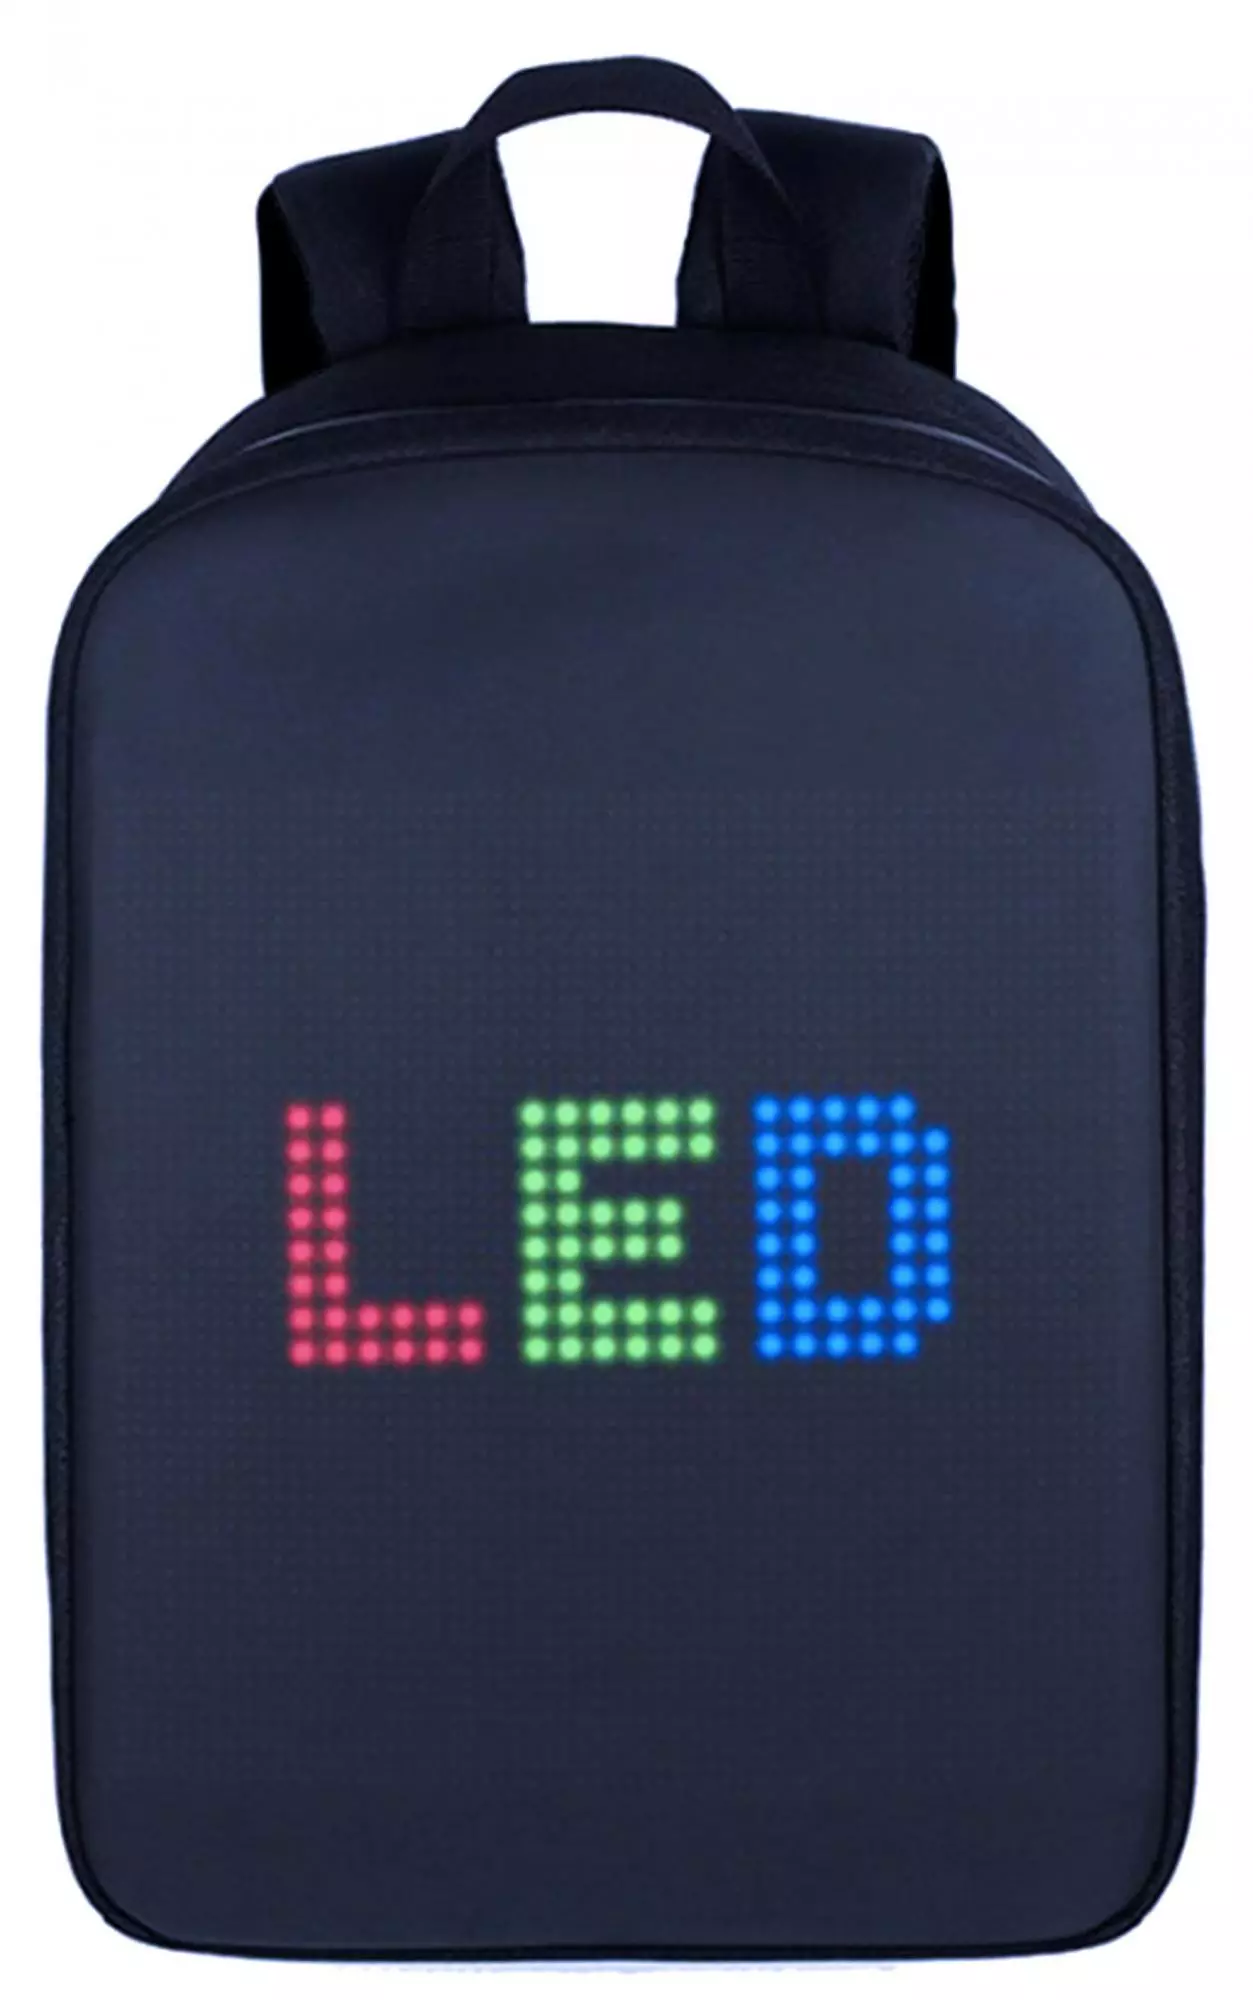 Ekraani seljakotid: Ülevaade LED-ekraaniga helendavatest digitaalsetest seljakottidest. Kuidas ühendada 